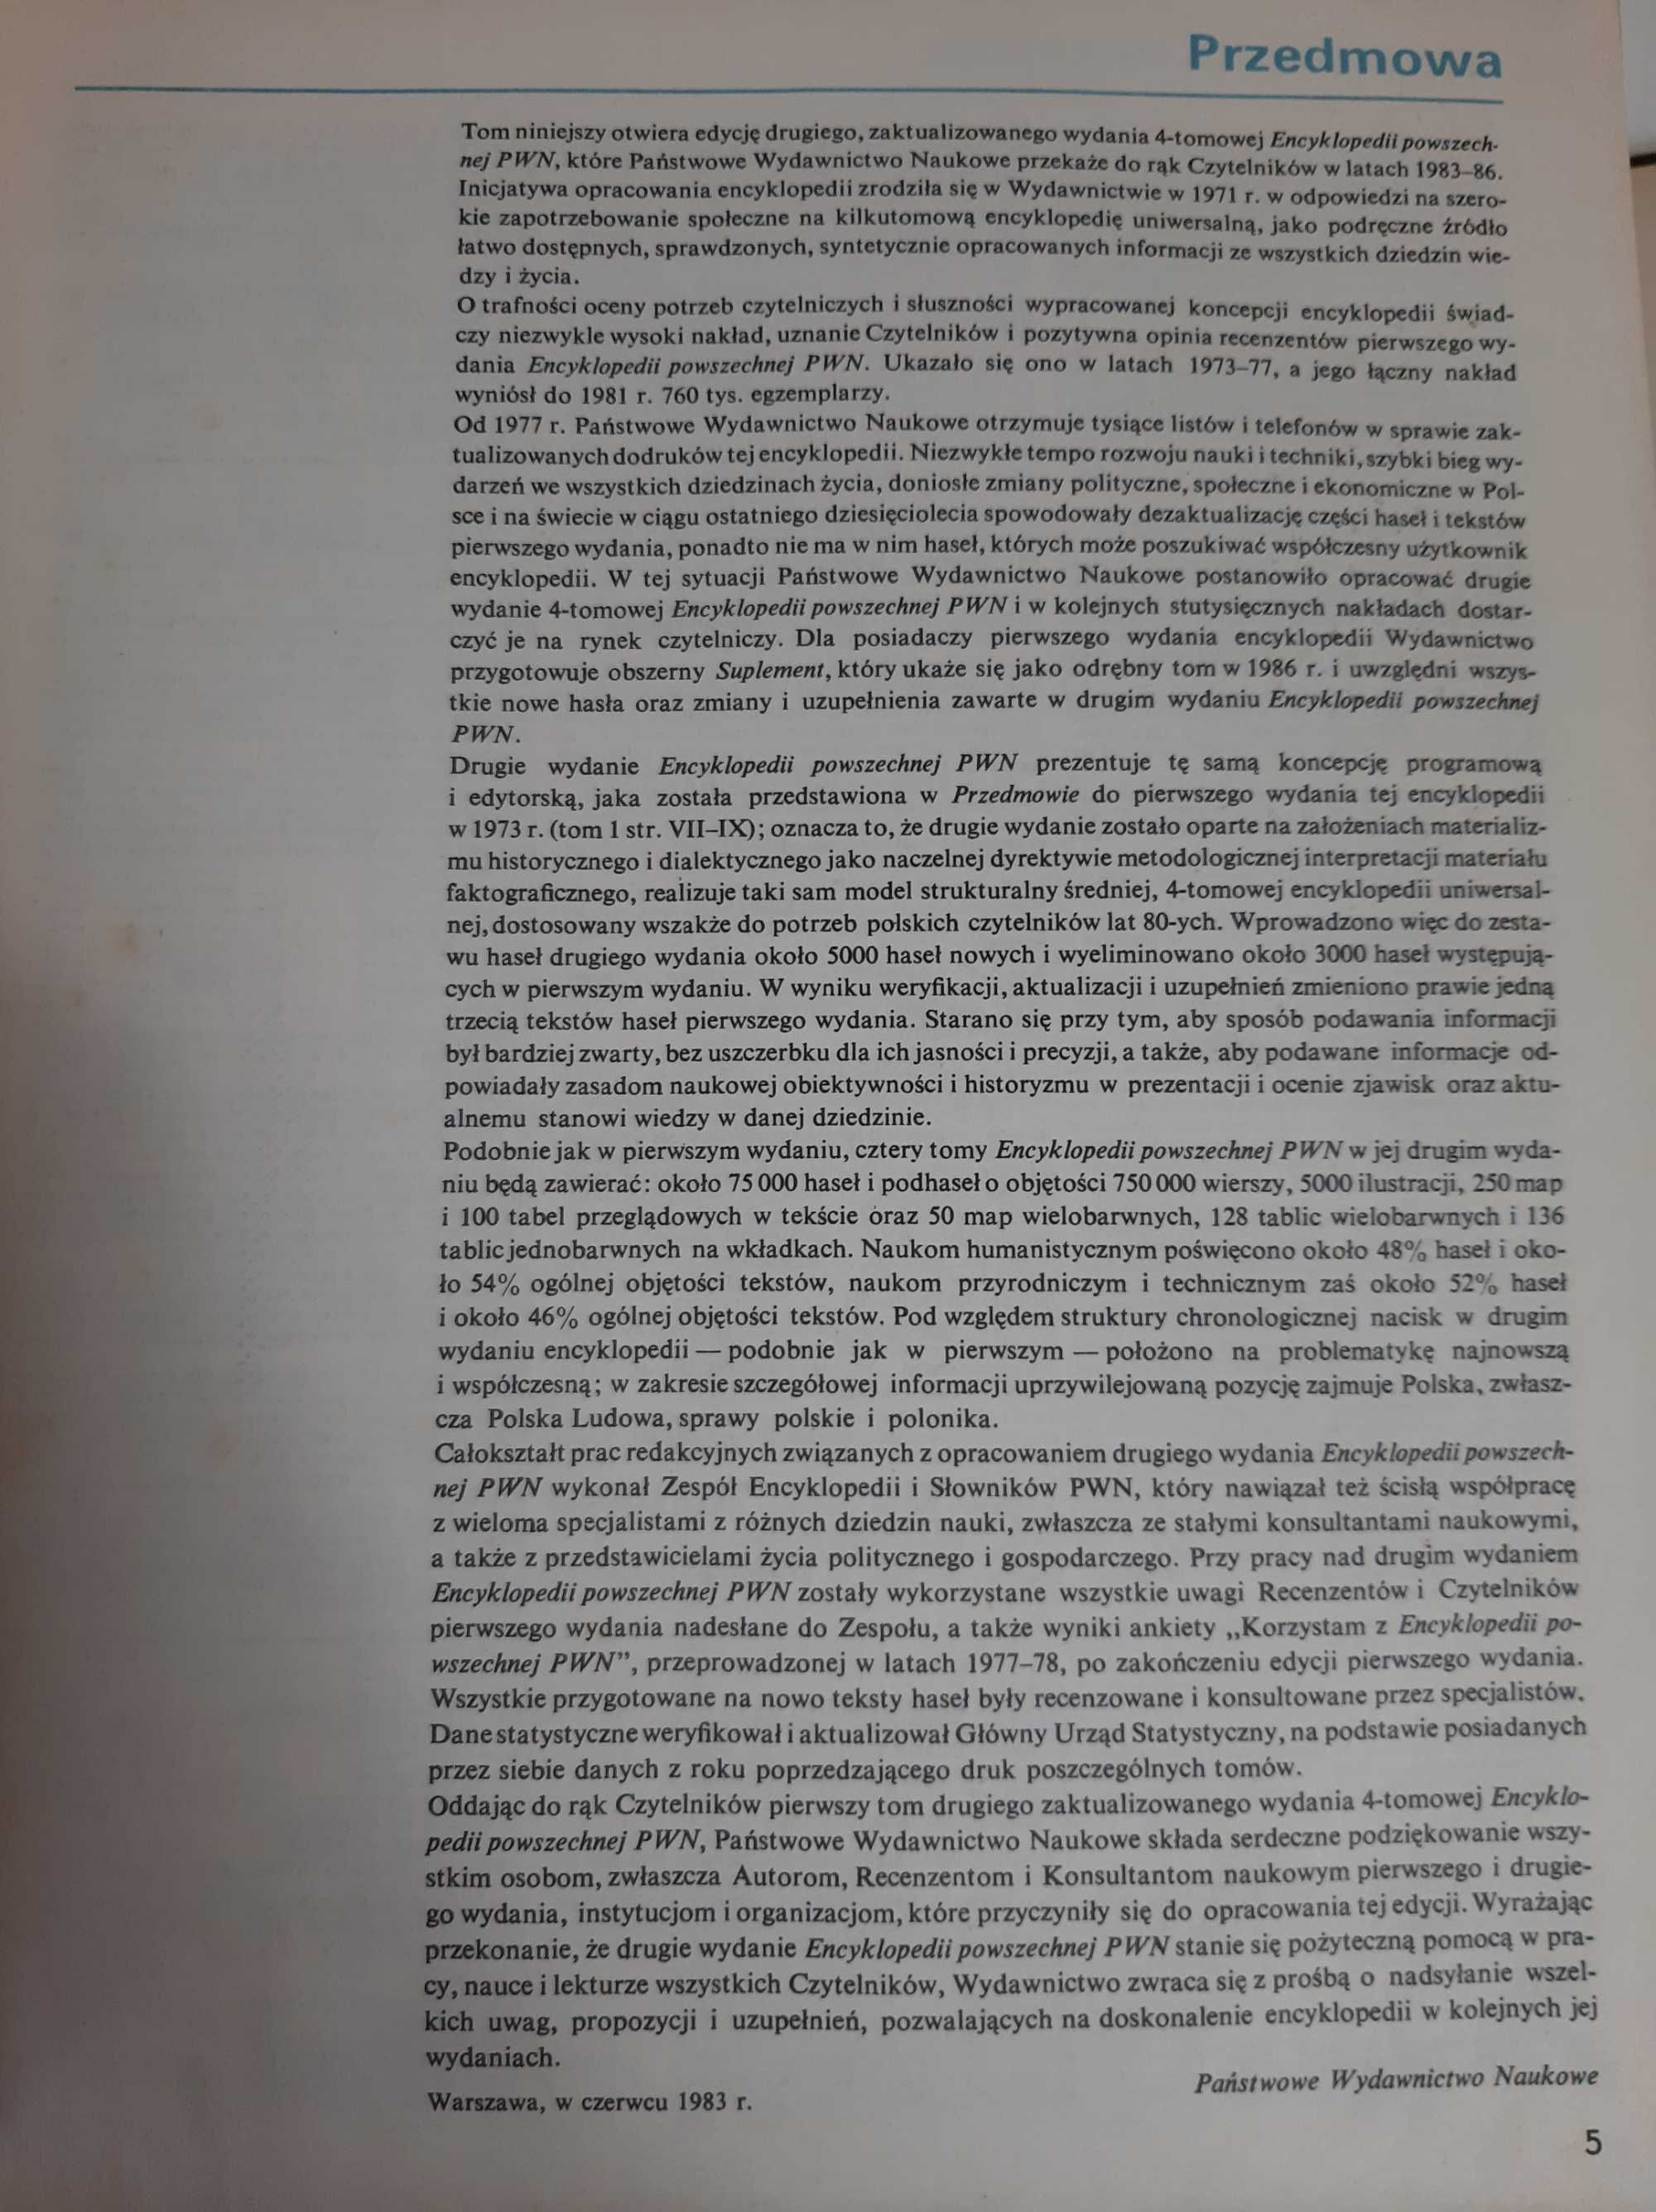 Encyklopedia Powszechna PWN tom 1-4 Wydanie trzecie 1983 r